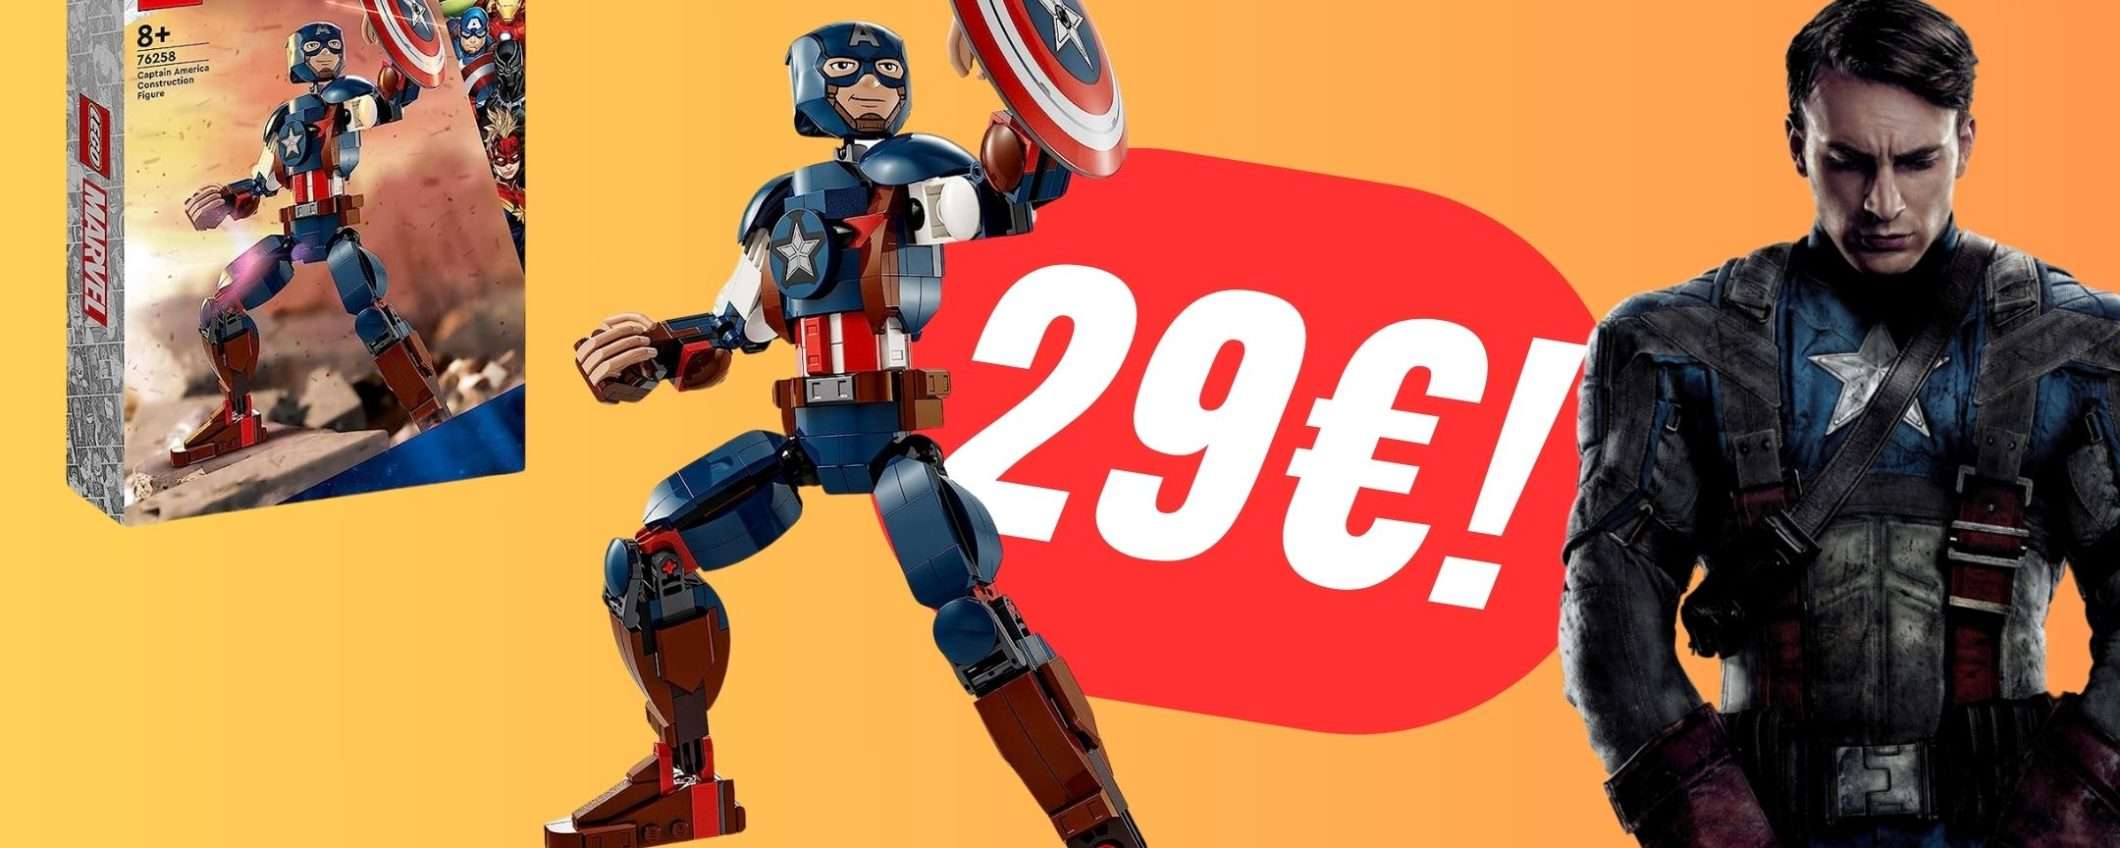 La Action Figure LEGO di Captain America è scontata del 21%!